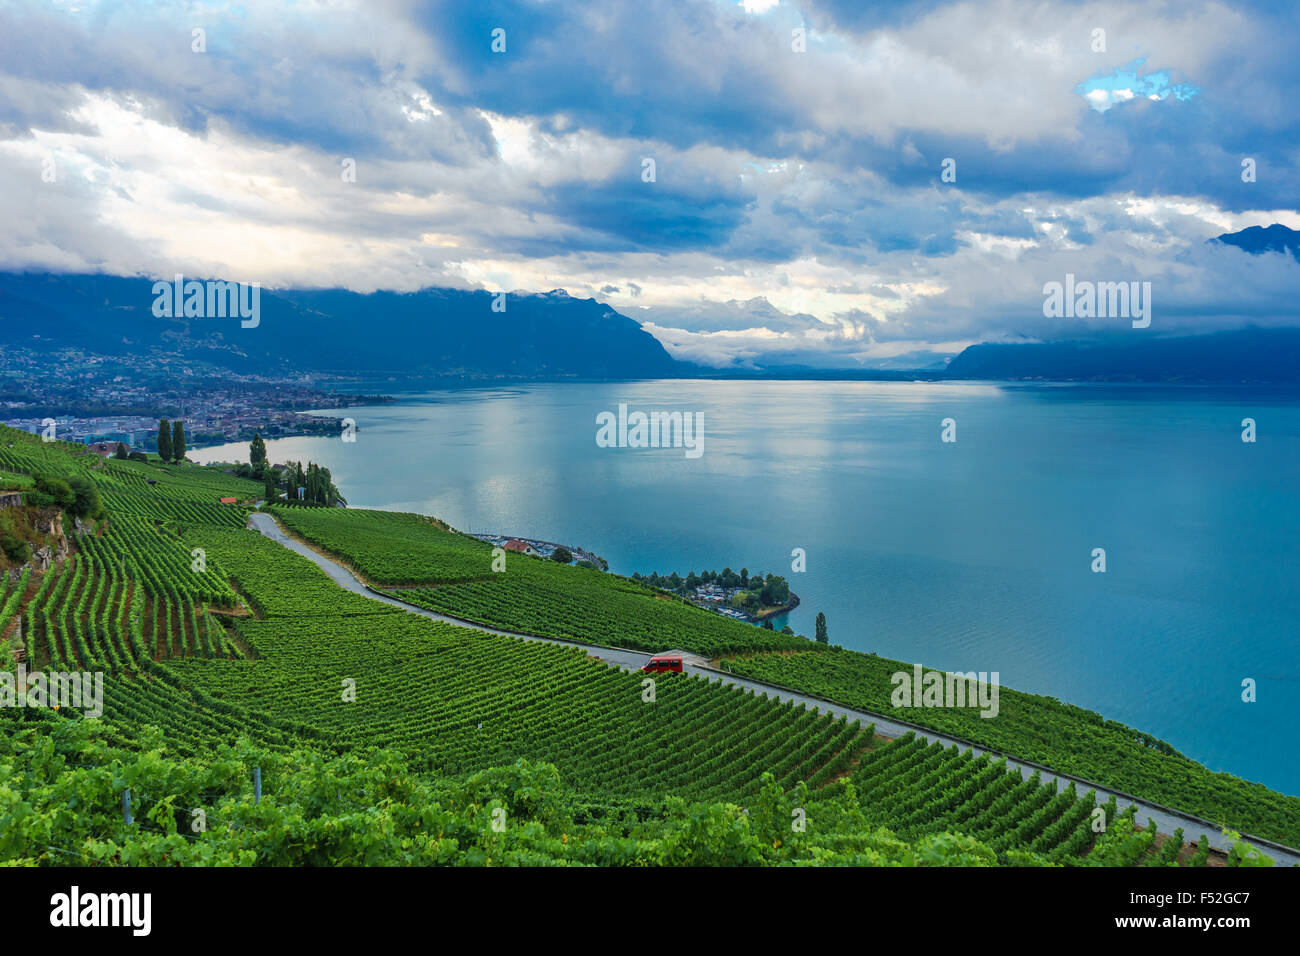 Die weitläufigen Weinbergen im Lavaux, einem UNESCO-Weltkulturerbe. Genfer See, Schweiz. Stockfoto